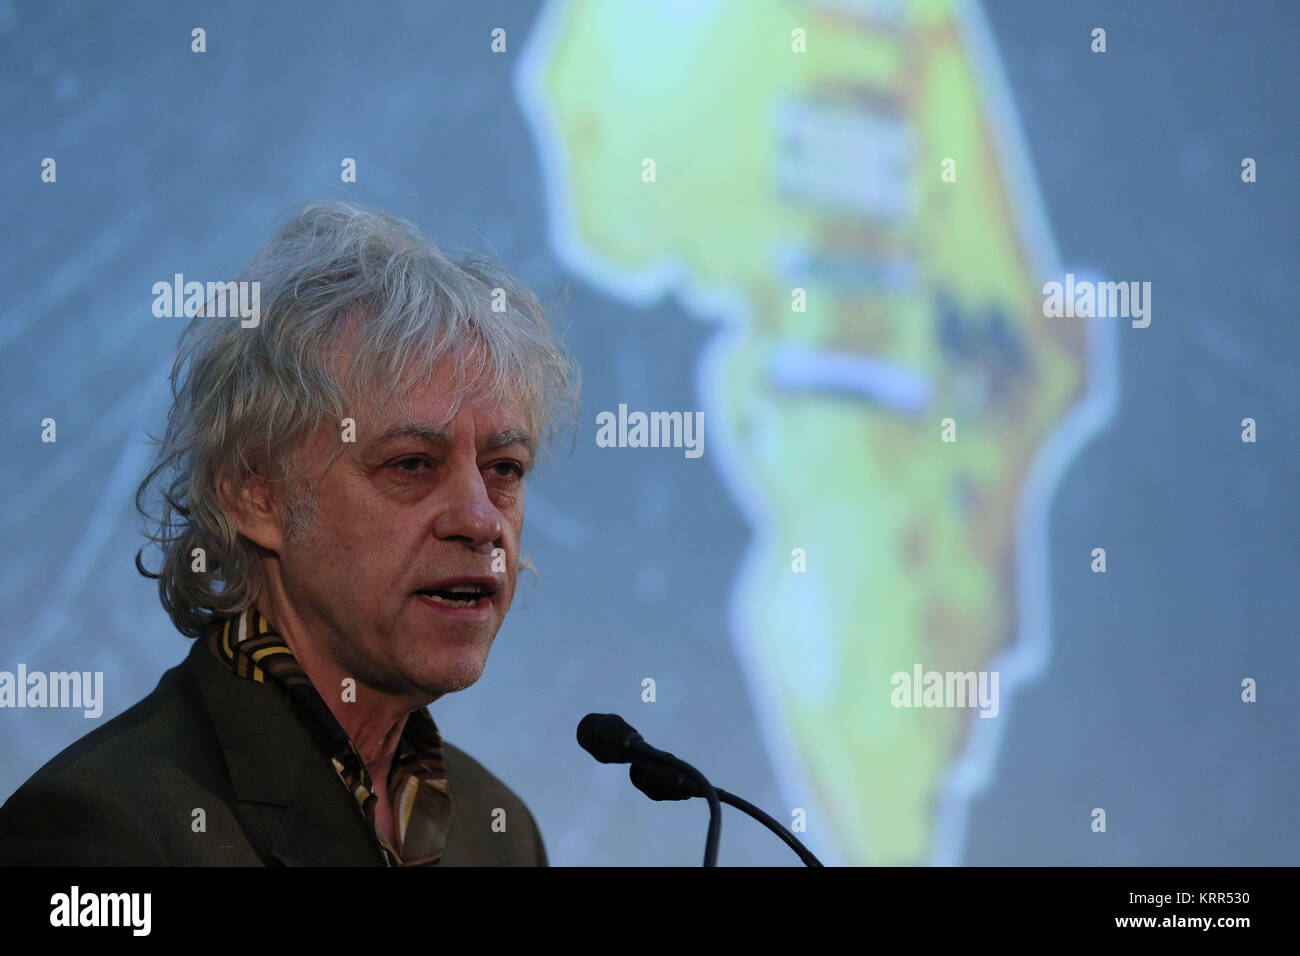 Sir Bob Geldof à la Bibliothèque nationale d'Irlande, il a annoncé que l'aide de bande Trust fait don de ses archives à l'INT. Photo date : mercredi 20 décembre 2017. Voir PA histoire IRISH Geldof. Crédit photo doit se lire : Brian Lawless/PA Wire Banque D'Images